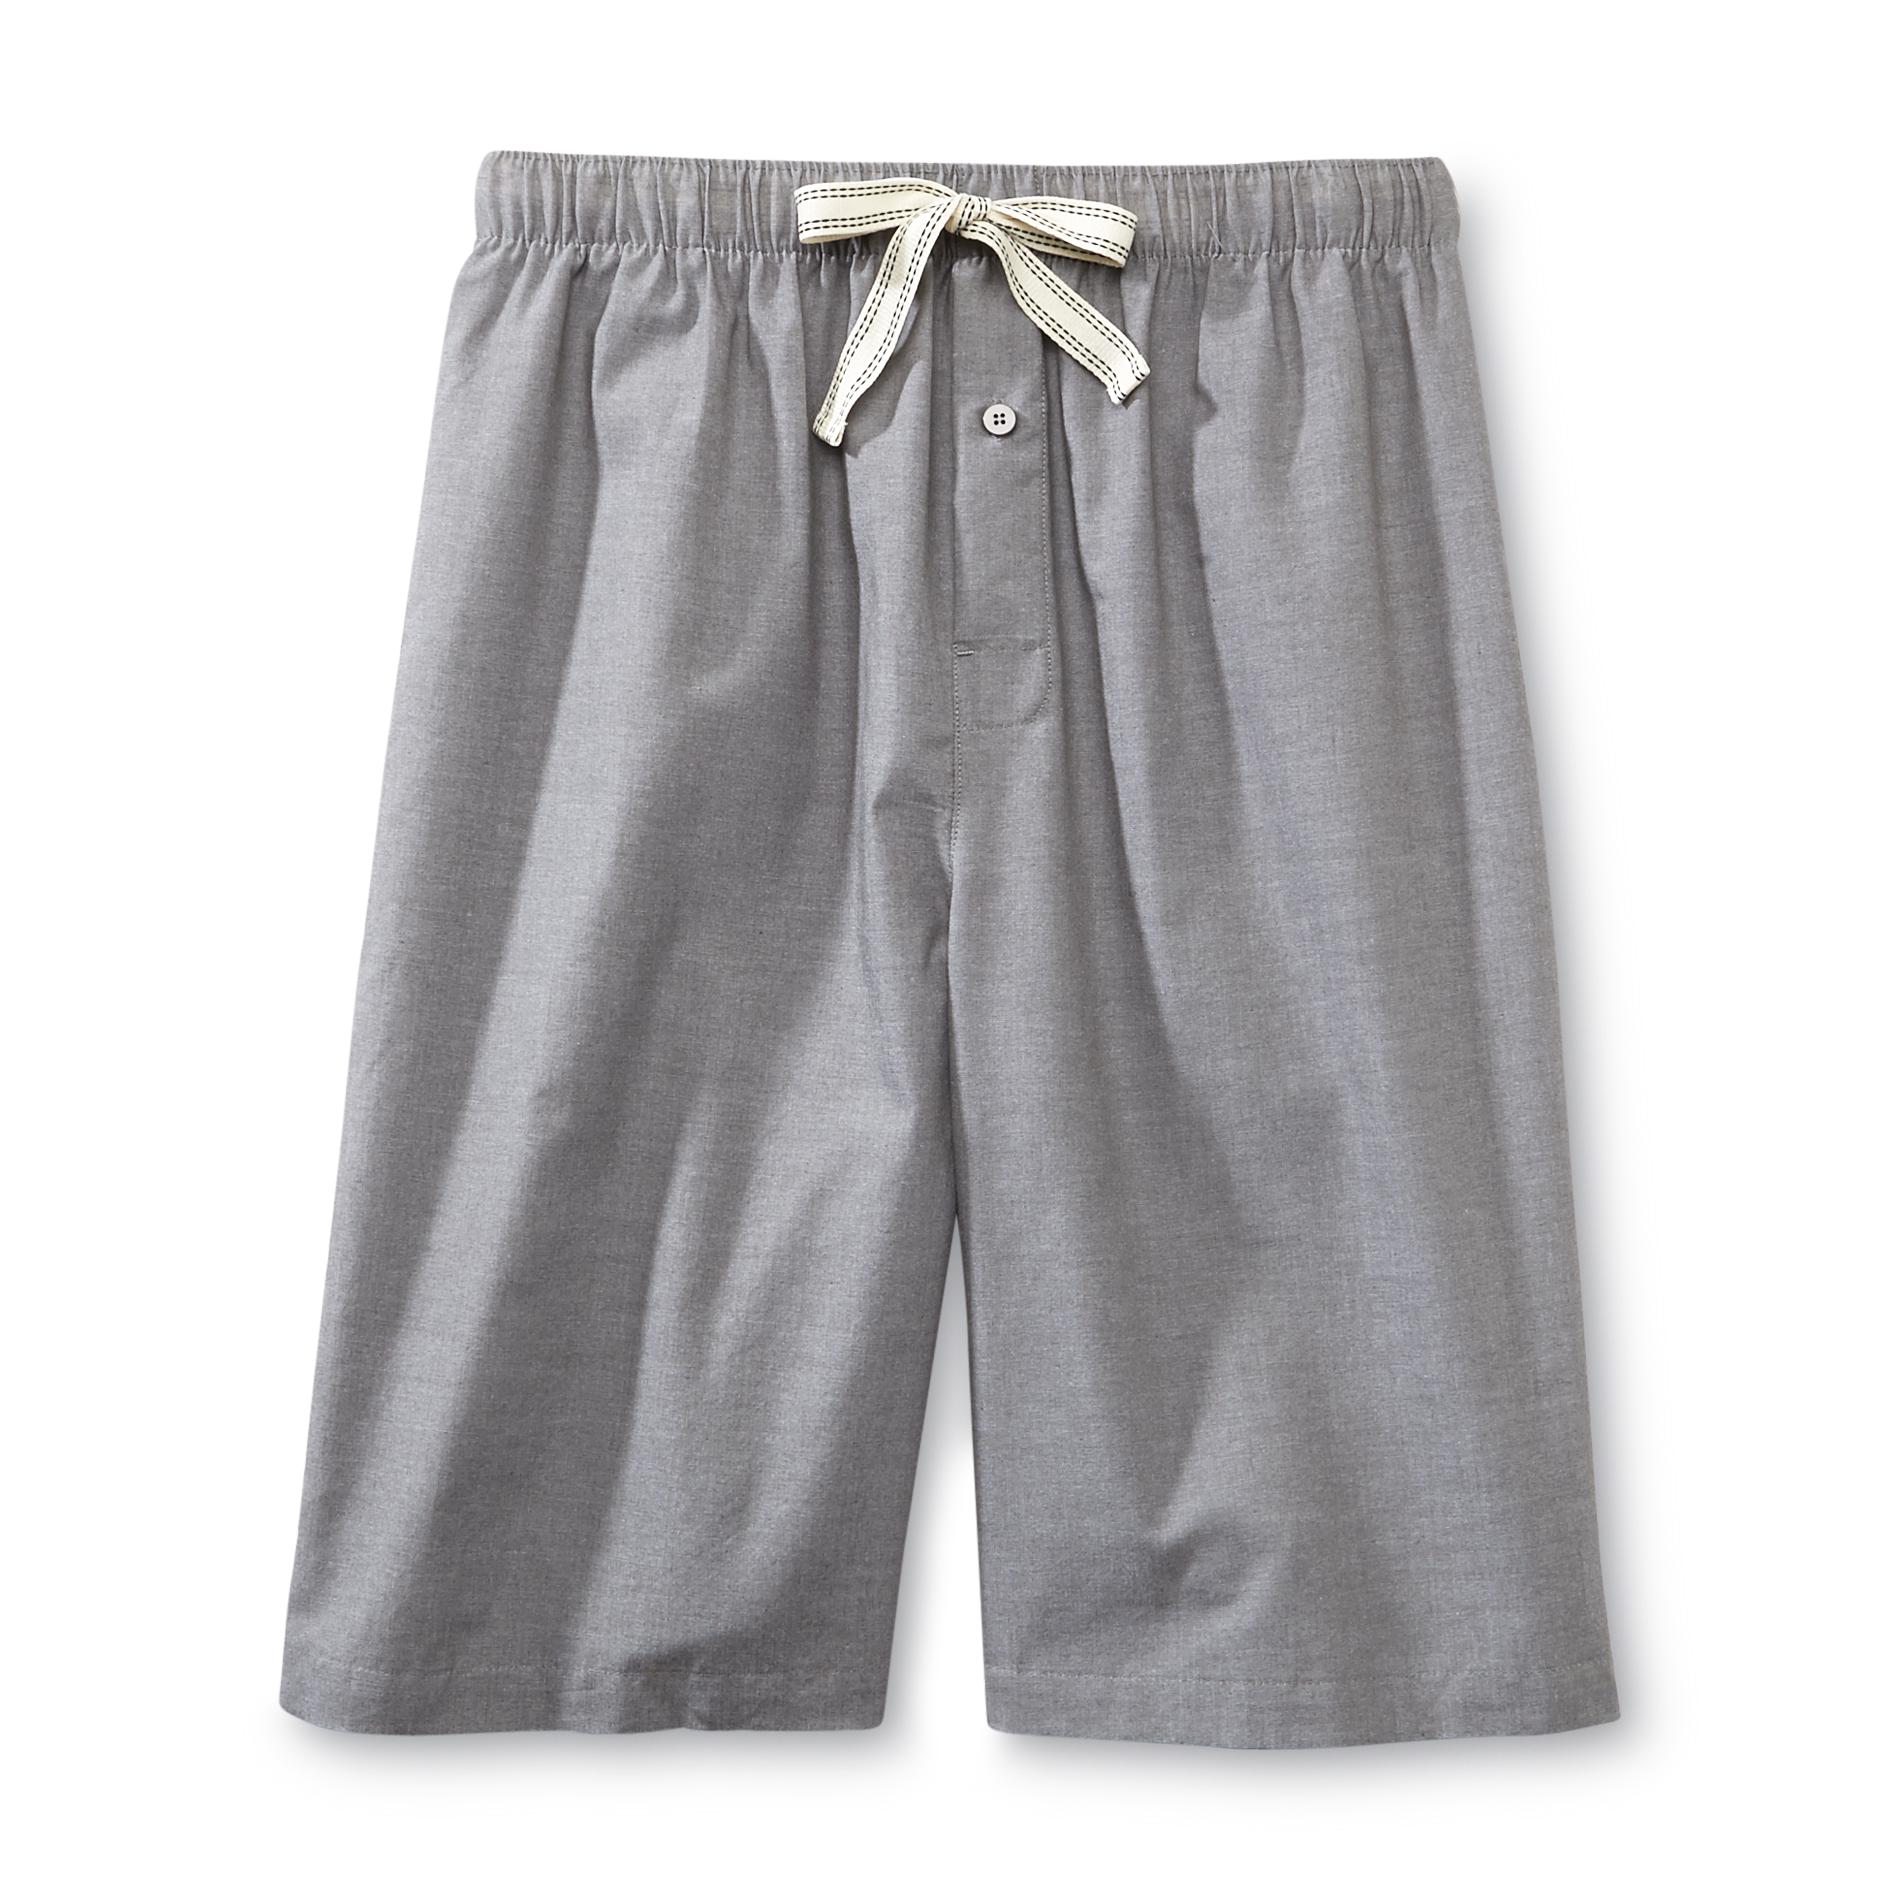 Basic Editions Men's Chambray Pajama Shorts